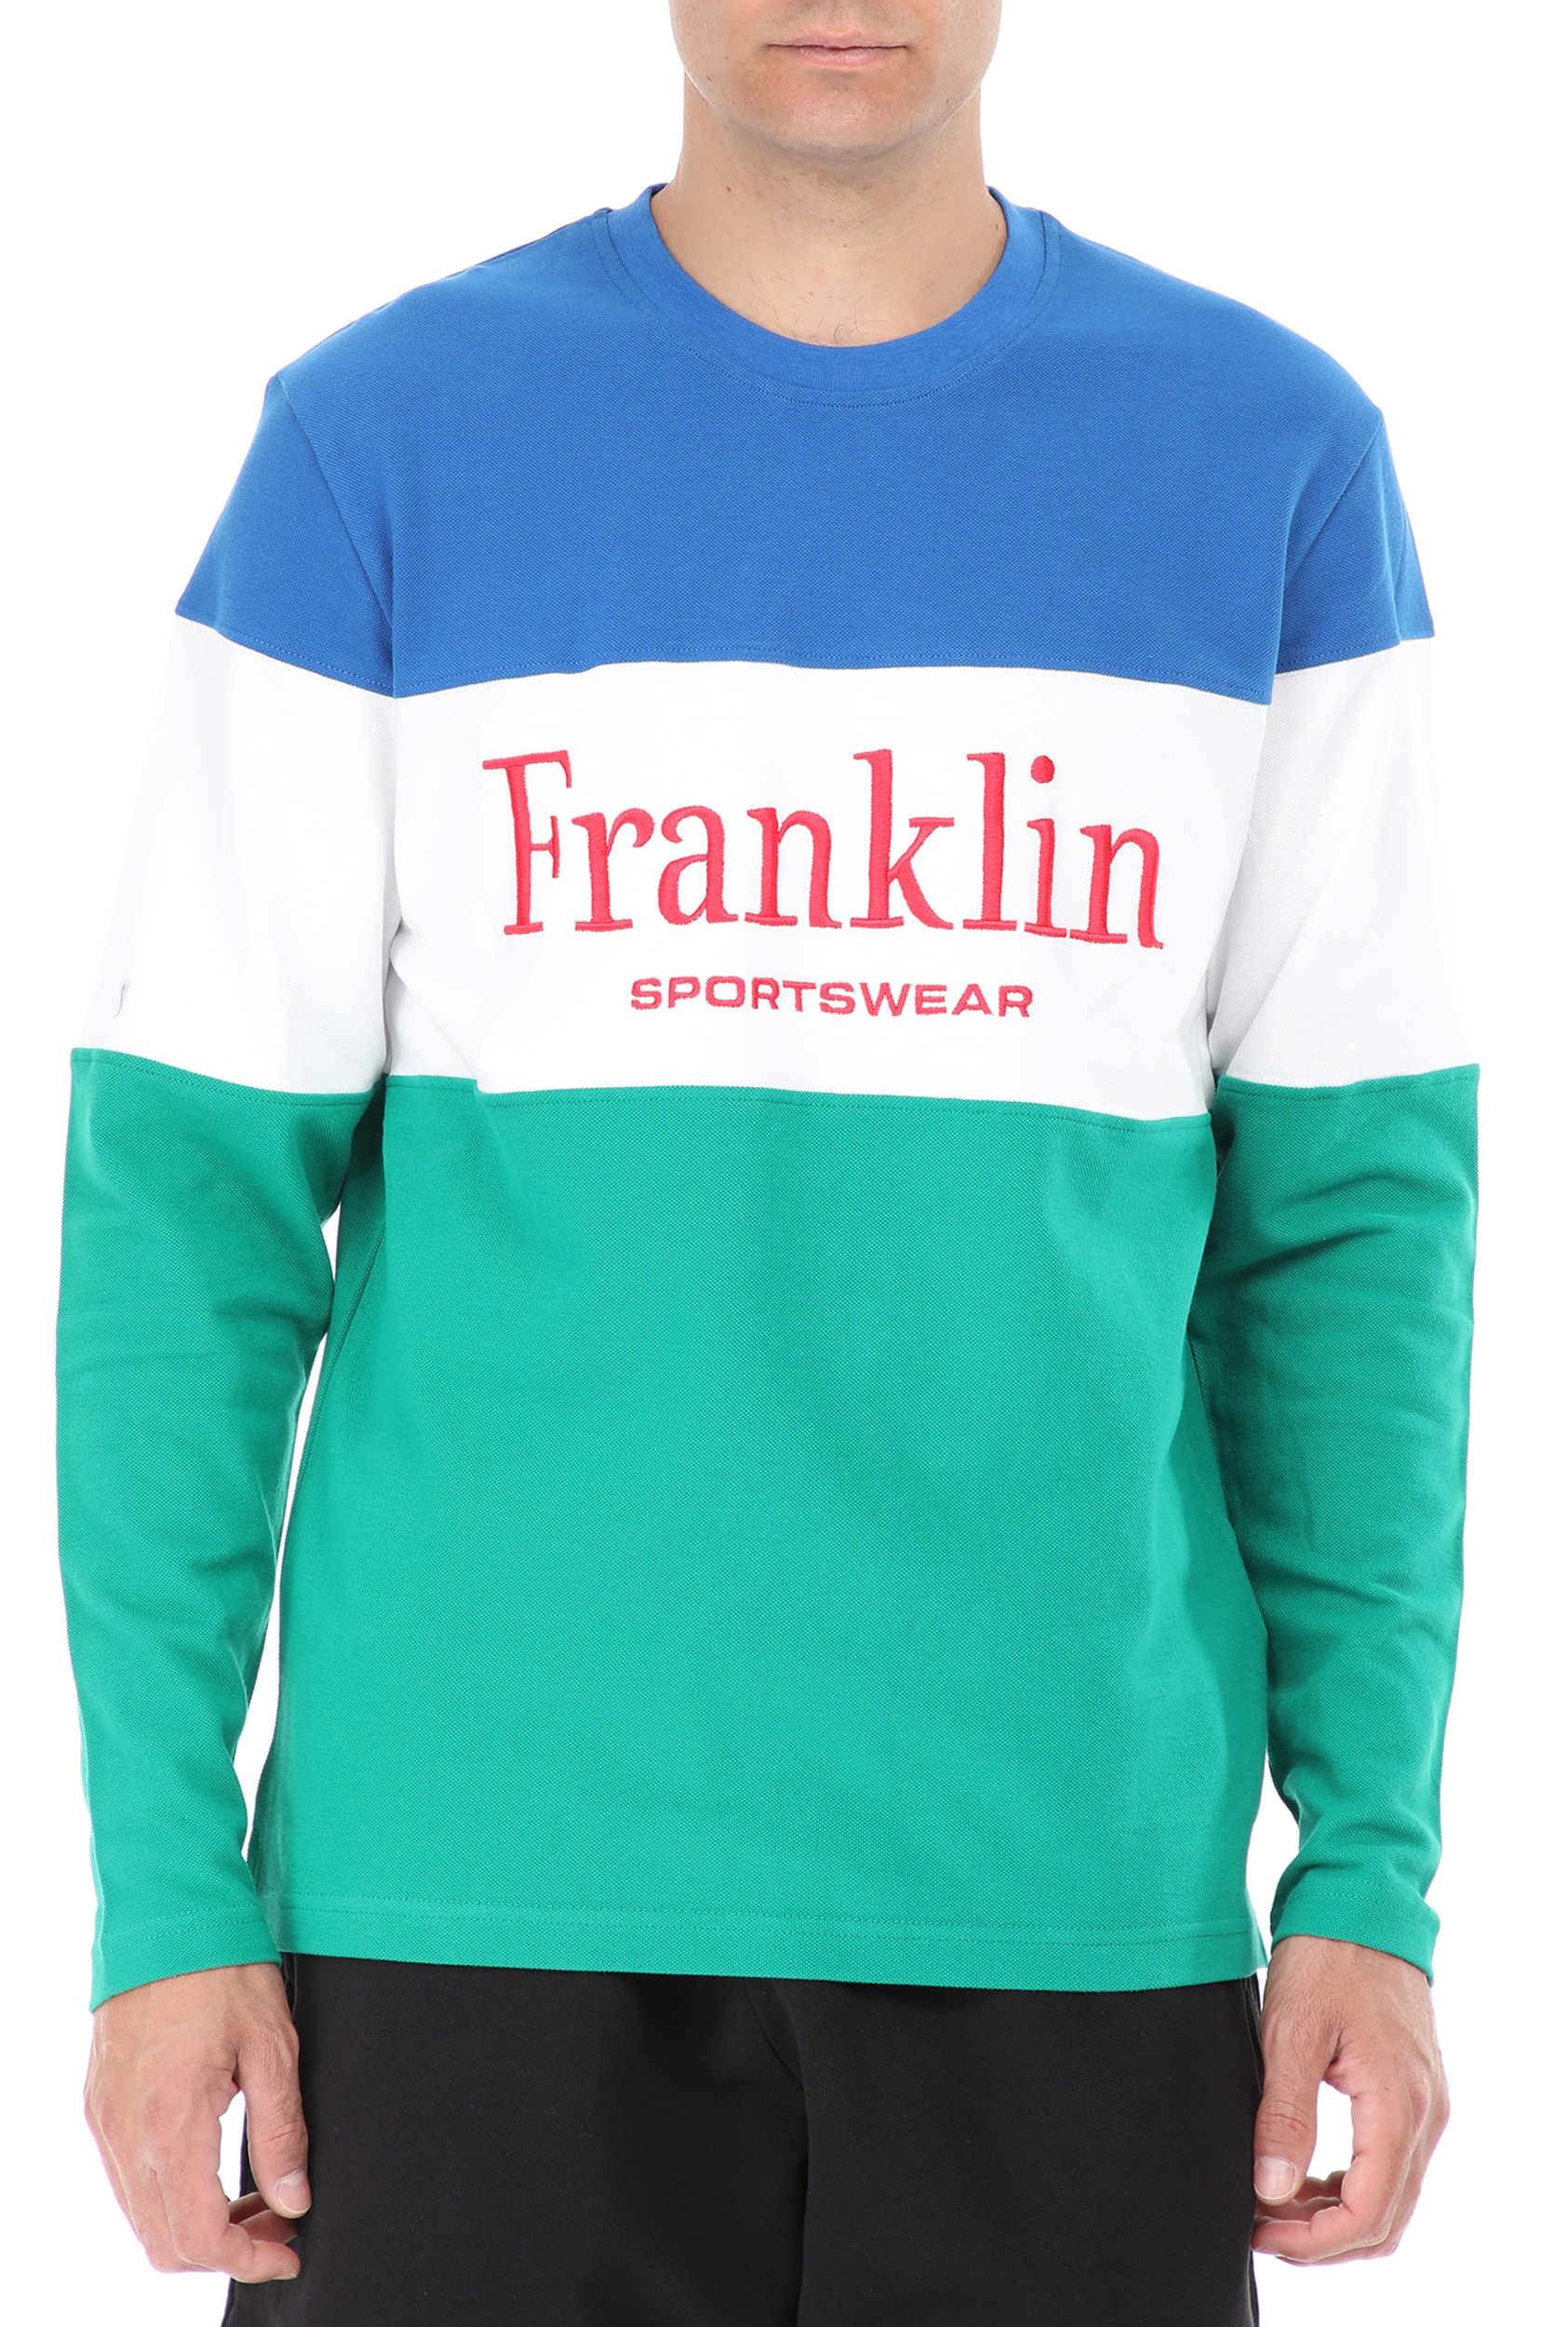 Ανδρικά/Ρούχα/Μπλούζες/Μακρυμάνικες FRANKLIN & MARSHALL - Ανδρική μπλούζα FRANKLIN & MARSHALL Vintage Sportswear Color Block μπλε πράσινη